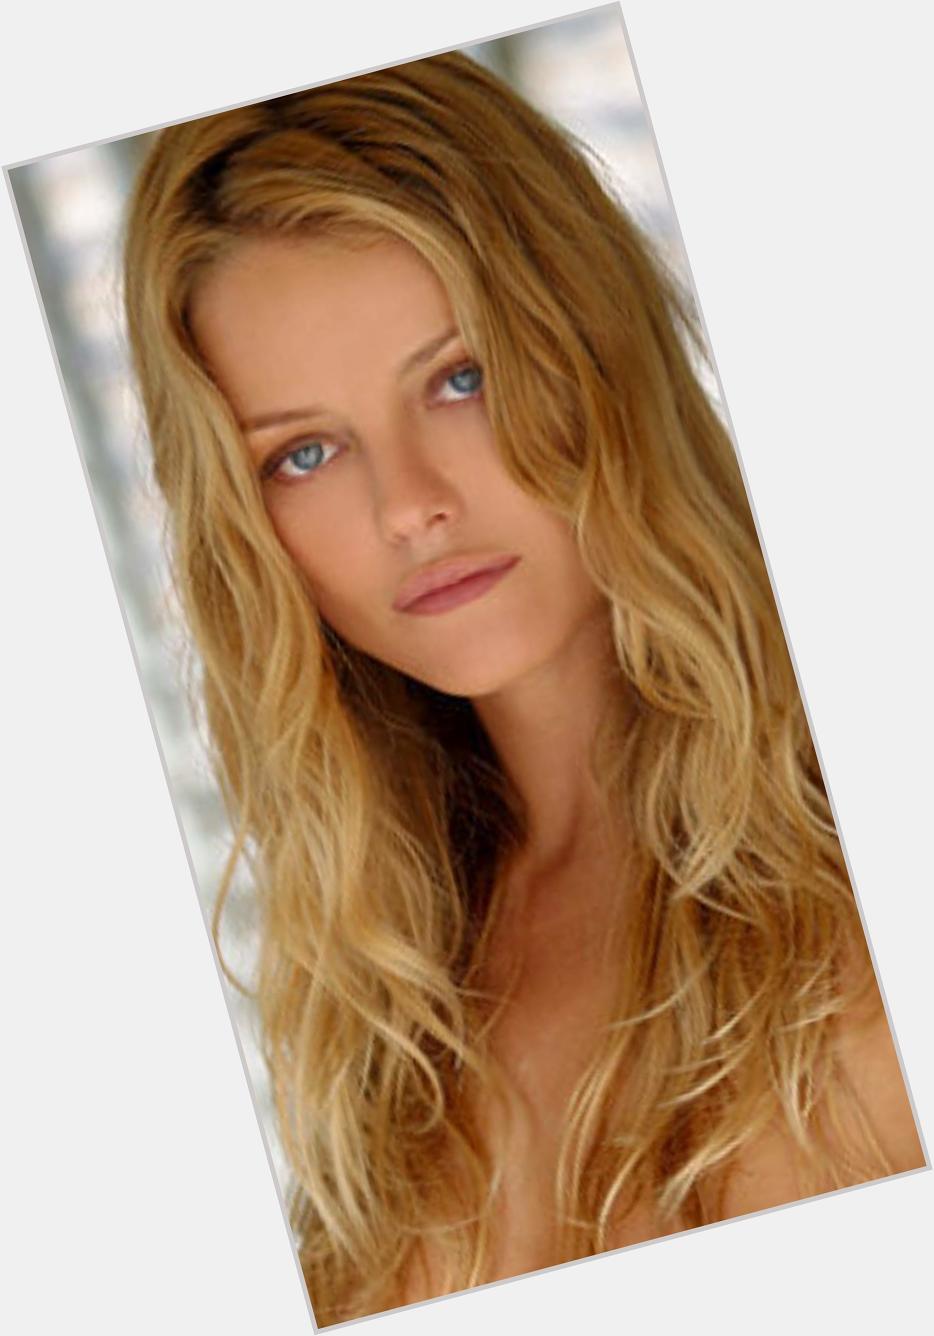 Natasja Vermeer Slim body,  blonde hair & hairstyles